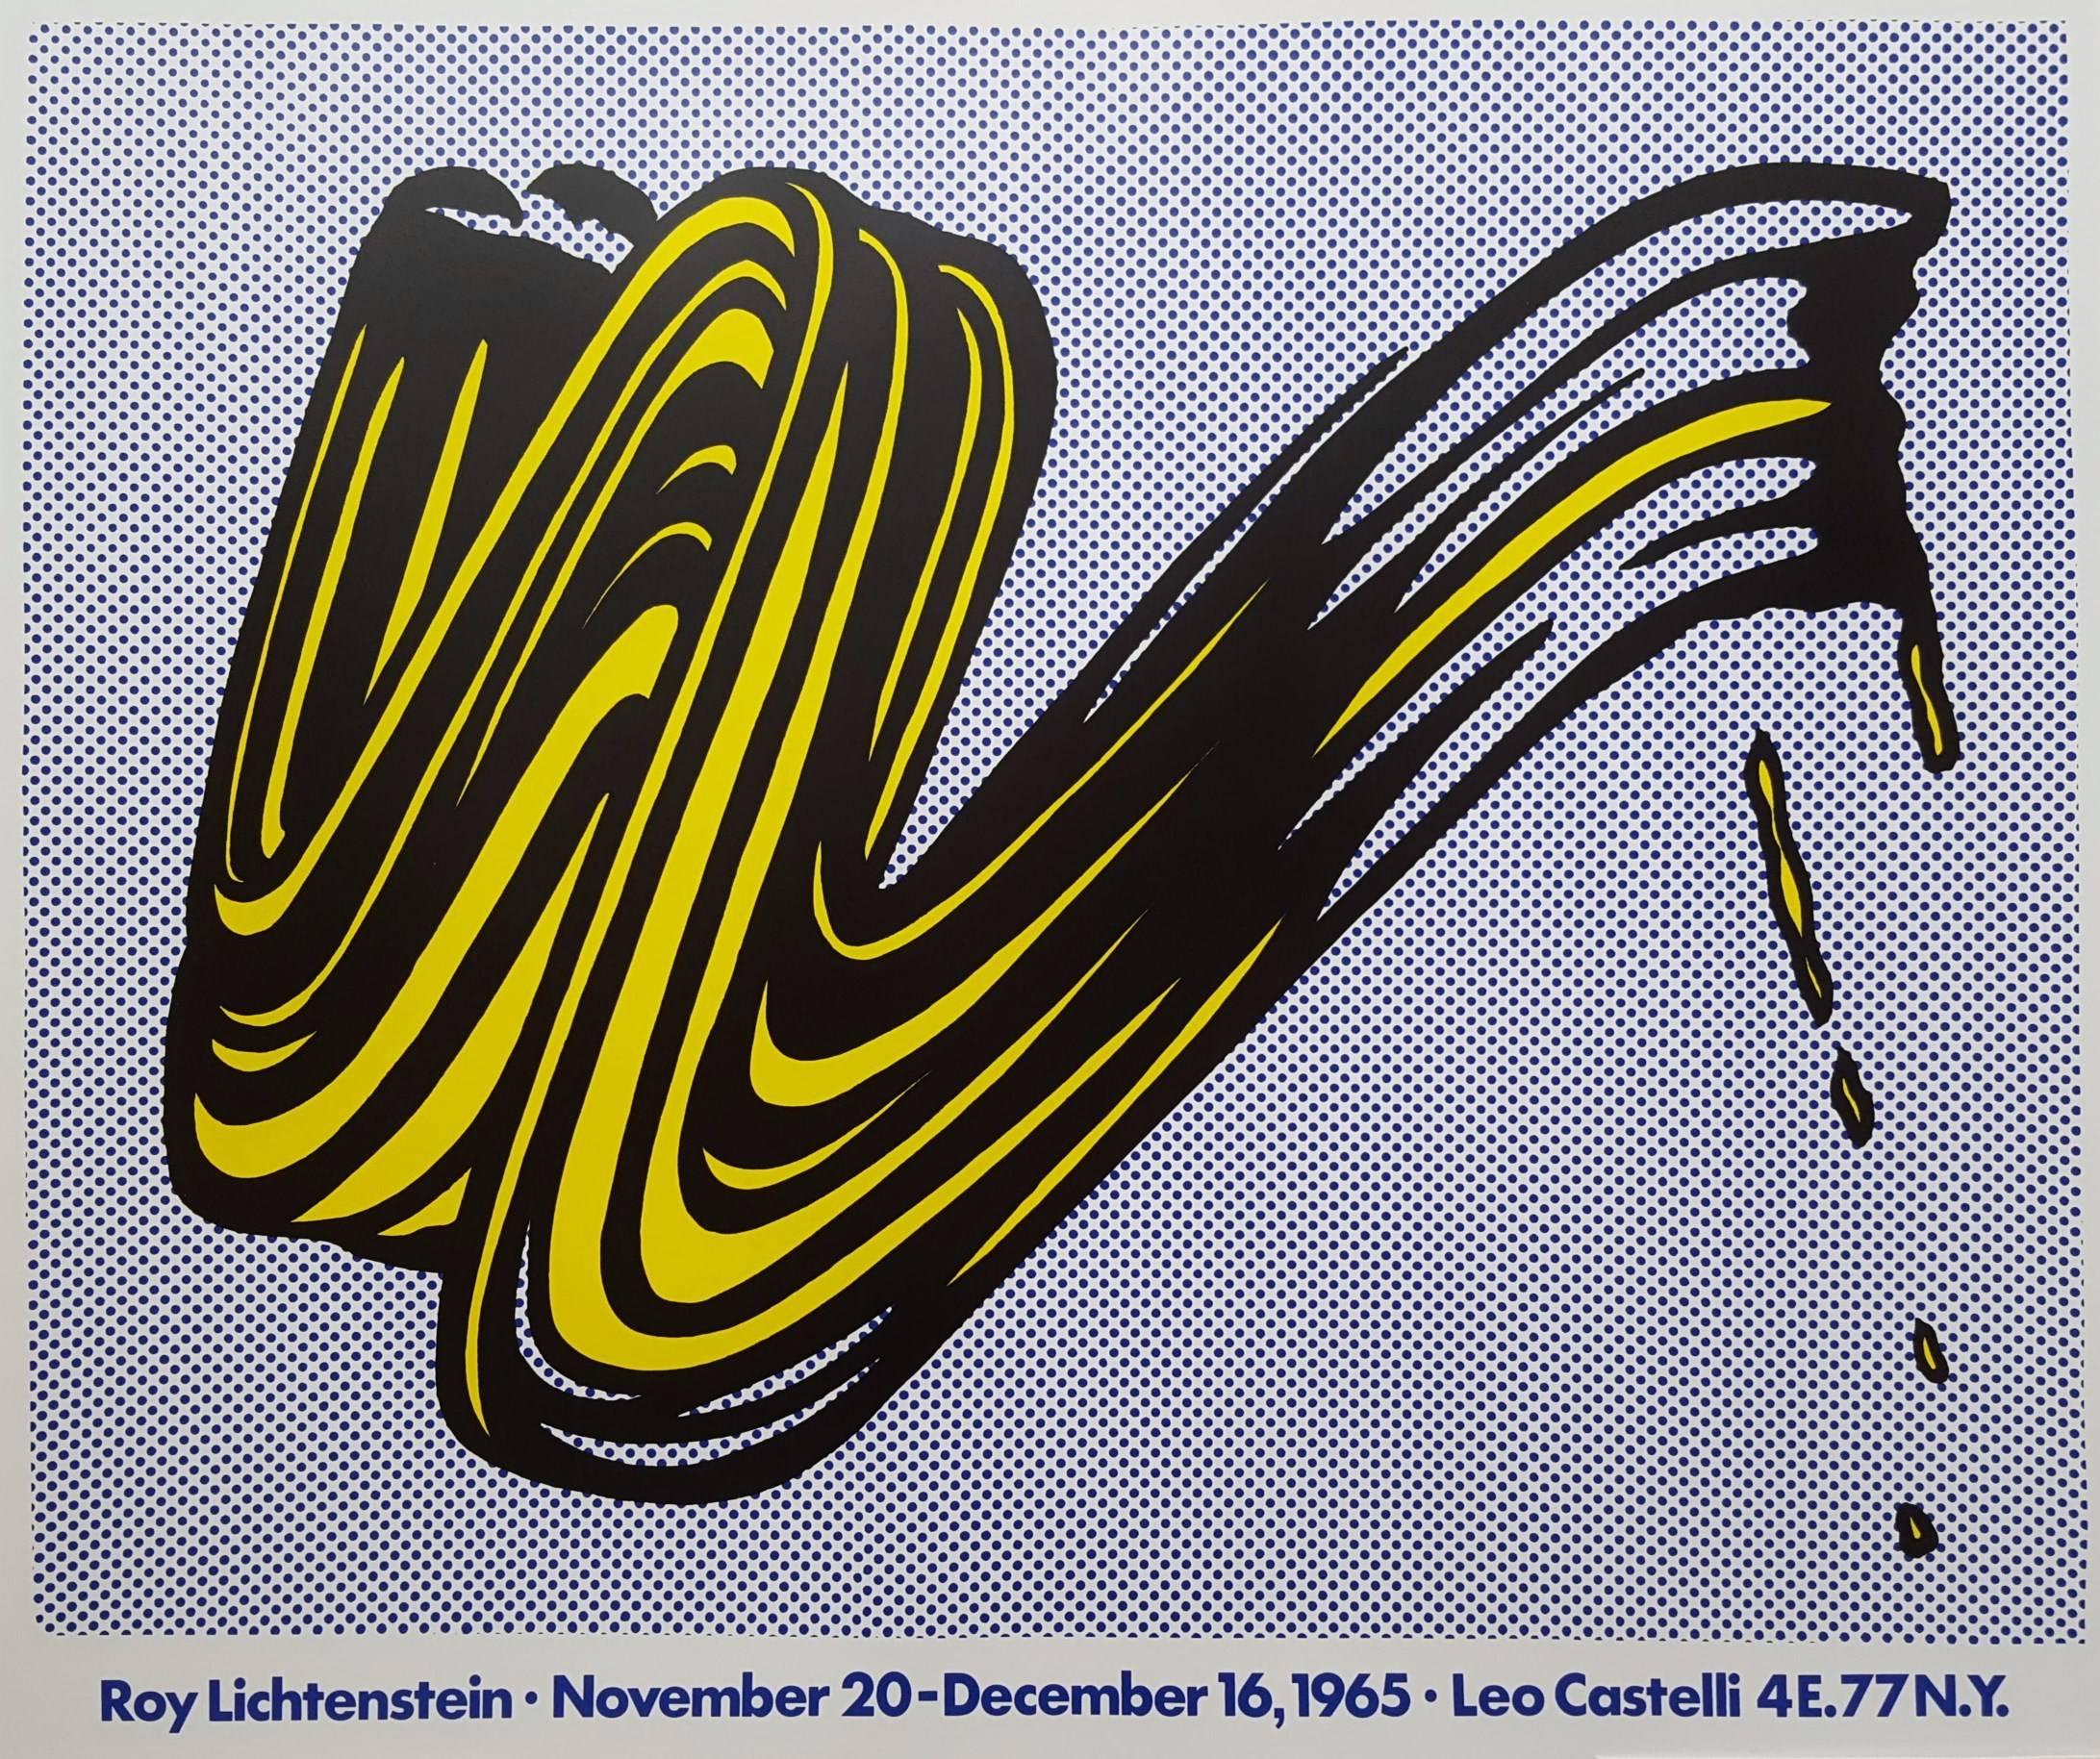 Roy Lichtenstein Abstract Print - Brushstroke: Leo Castelli Gallery